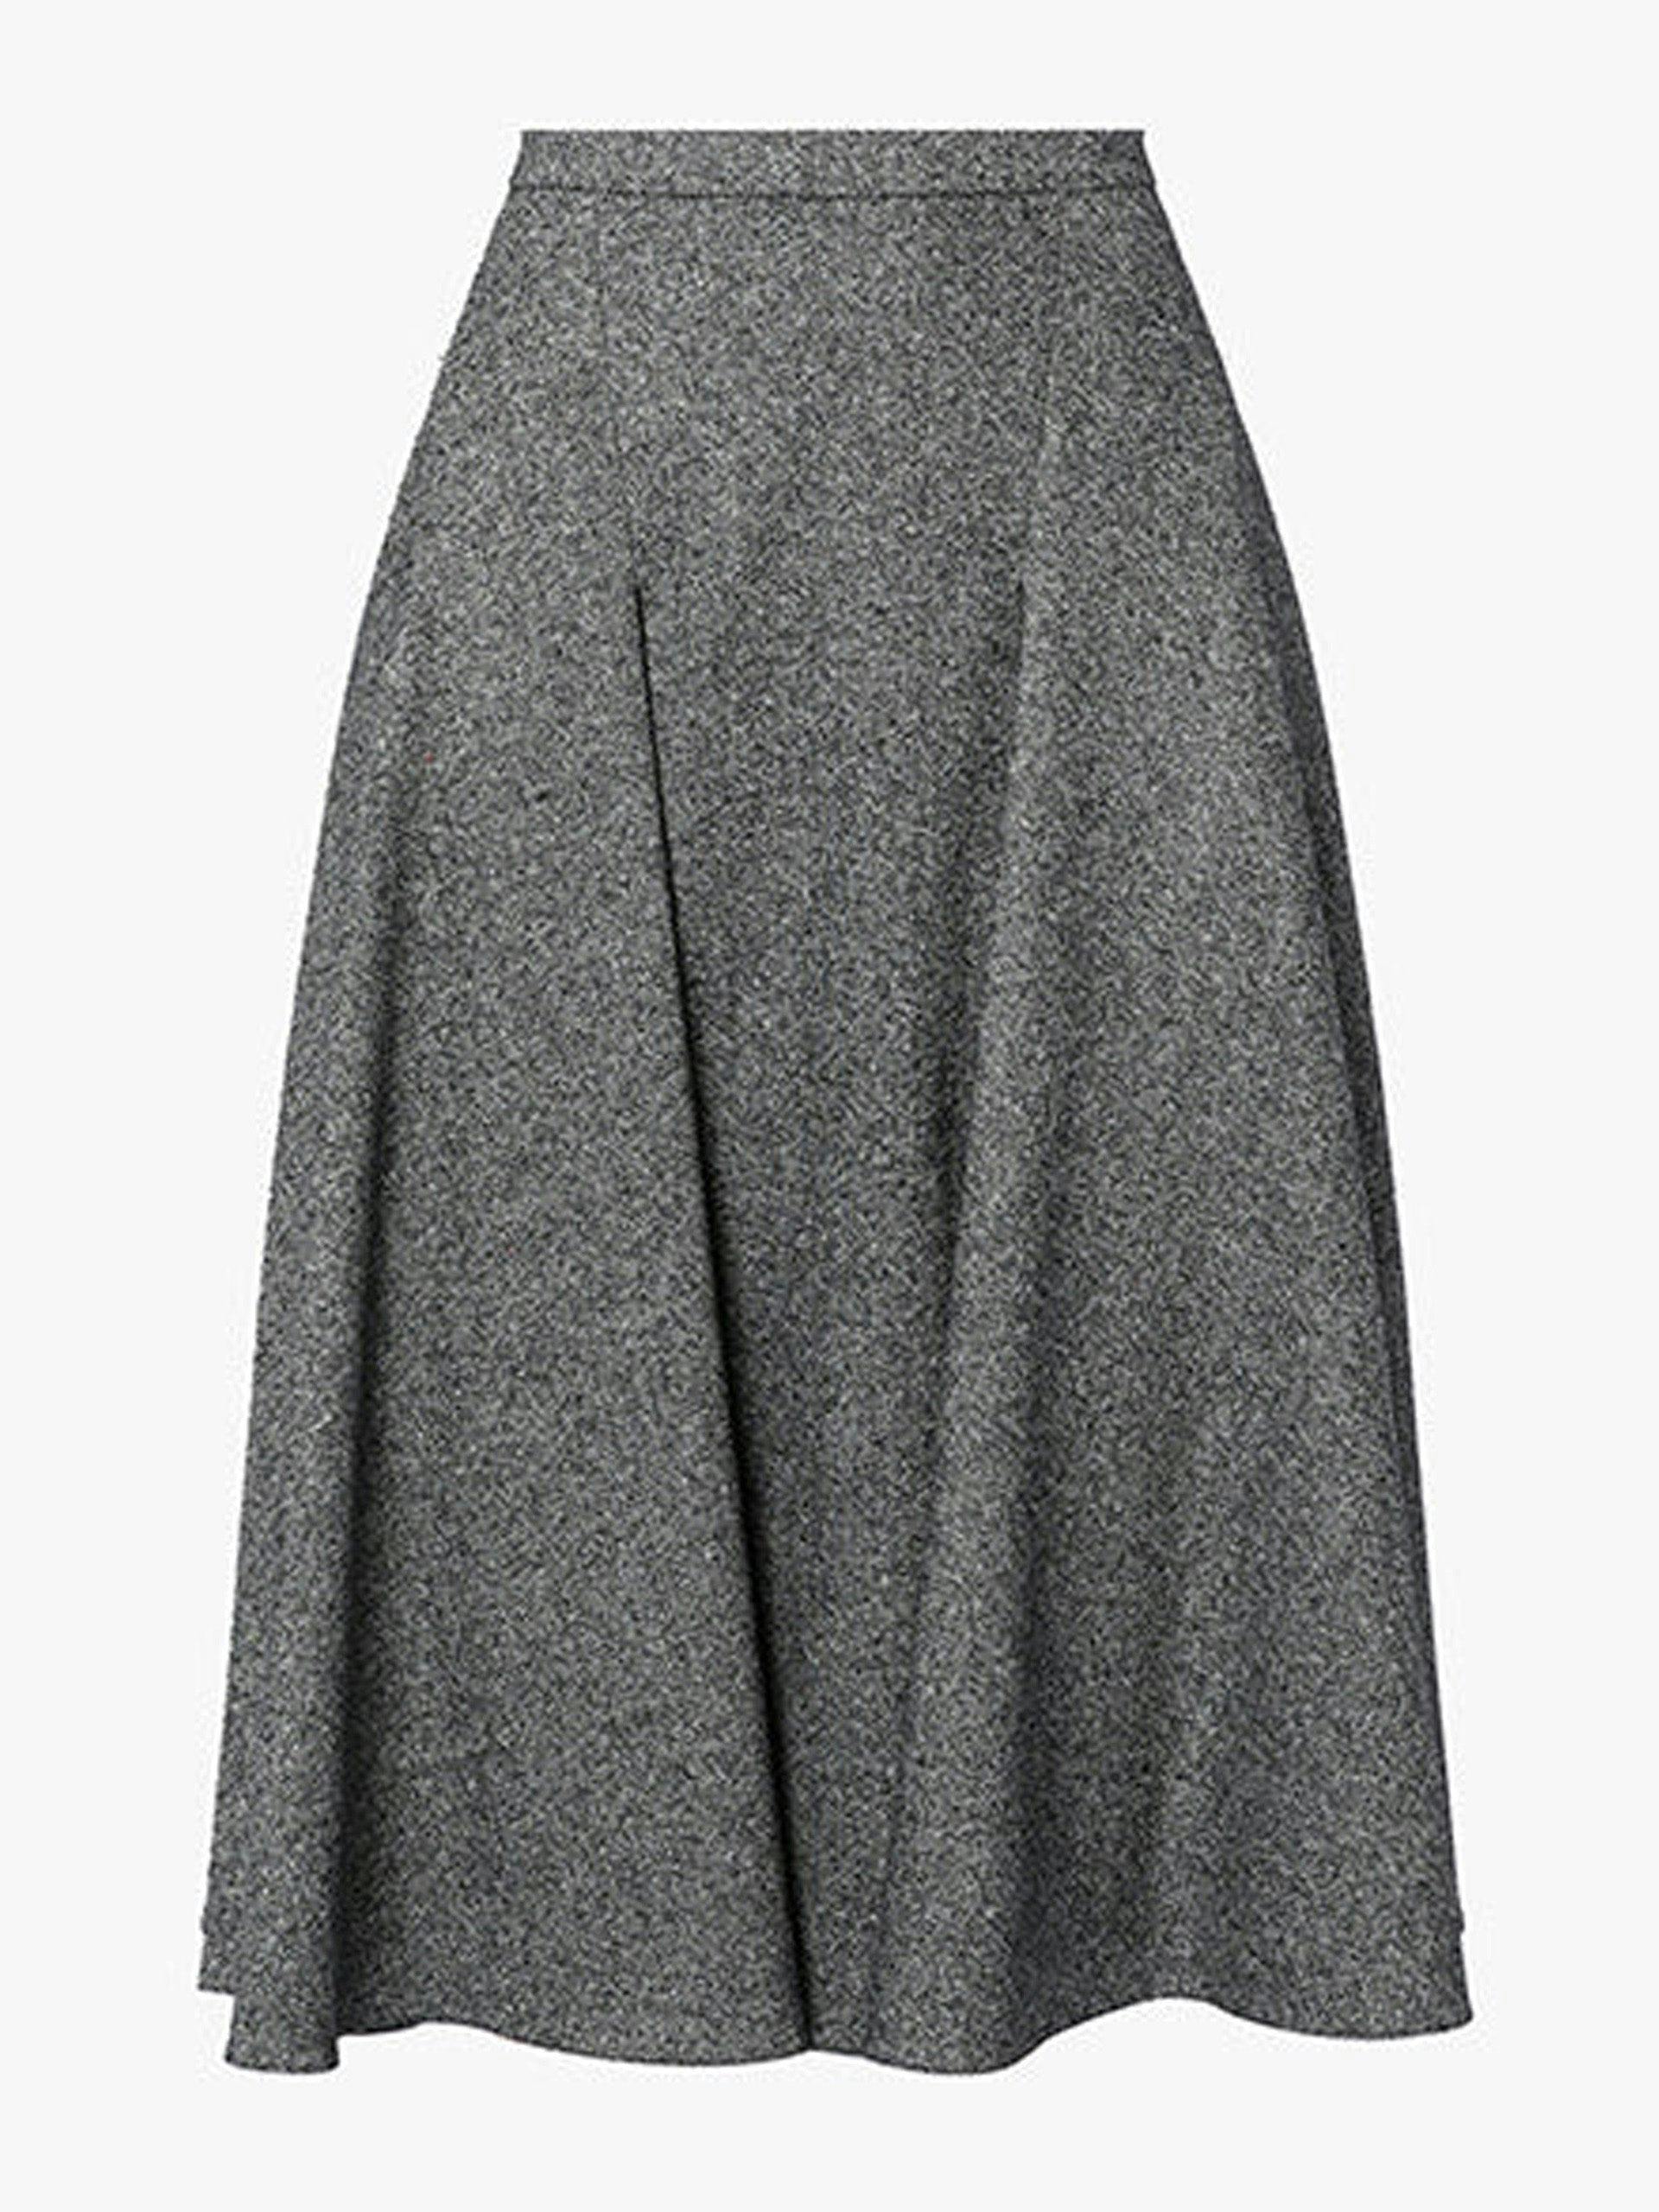 Sonya grey Birdseye tailoring skirt